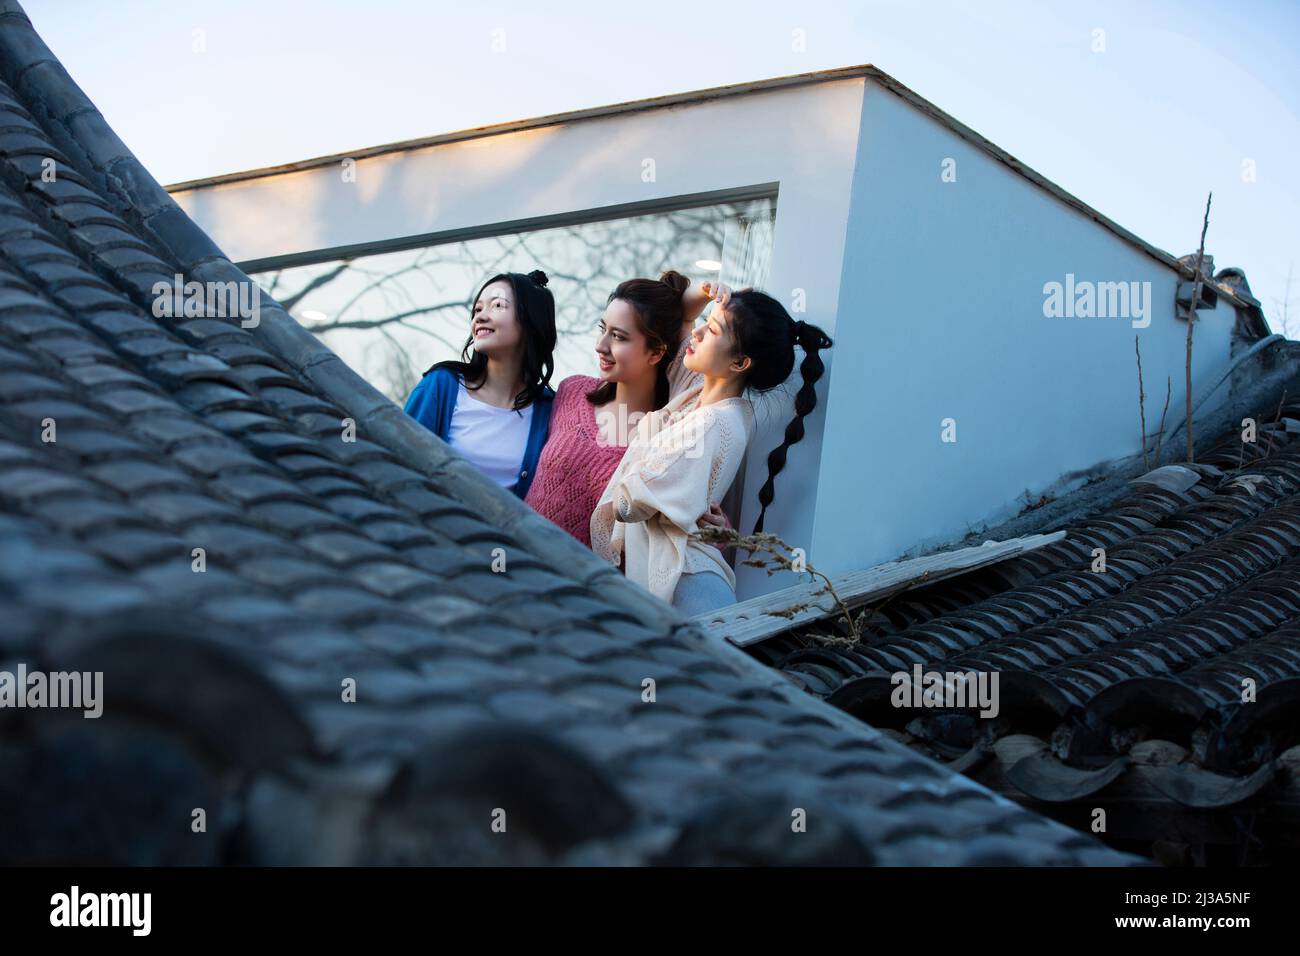 Jeunes femmes chinoises appréciant le paysage architectural traditionnel du siheyuan de Pékin à une fenêtre pleine hauteur - photo de stock Banque D'Images